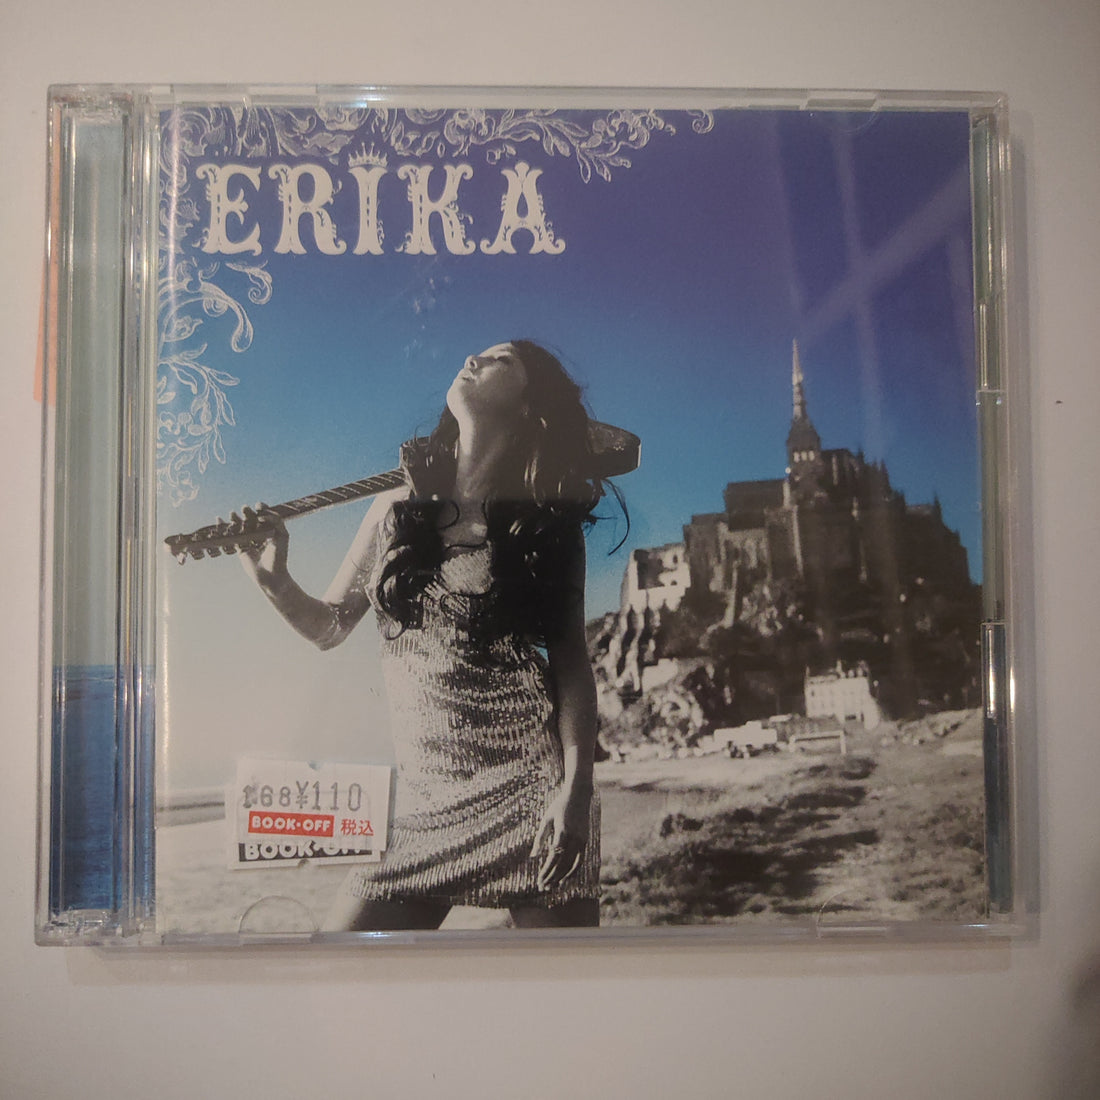 Erika Sawajiri - Free (CD) (VG+) (2CDs)